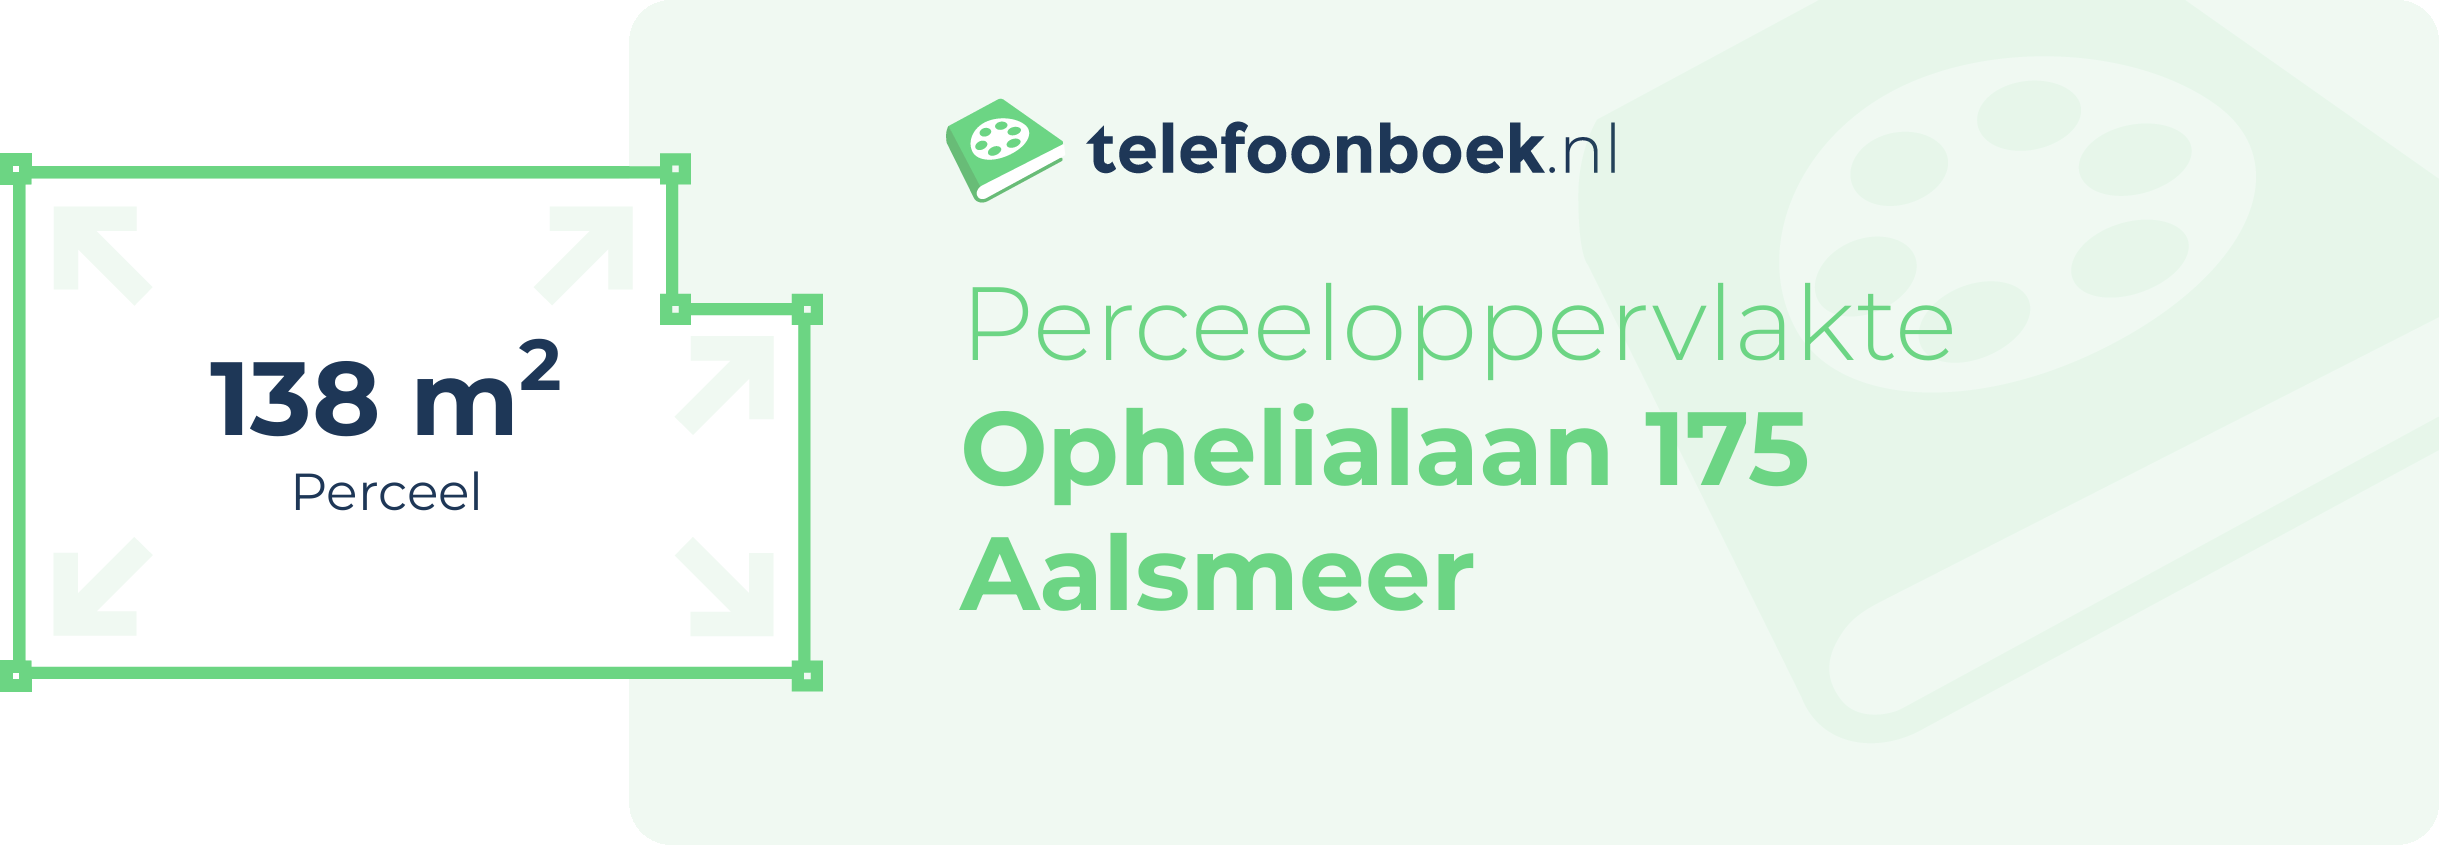 Perceeloppervlakte Ophelialaan 175 Aalsmeer